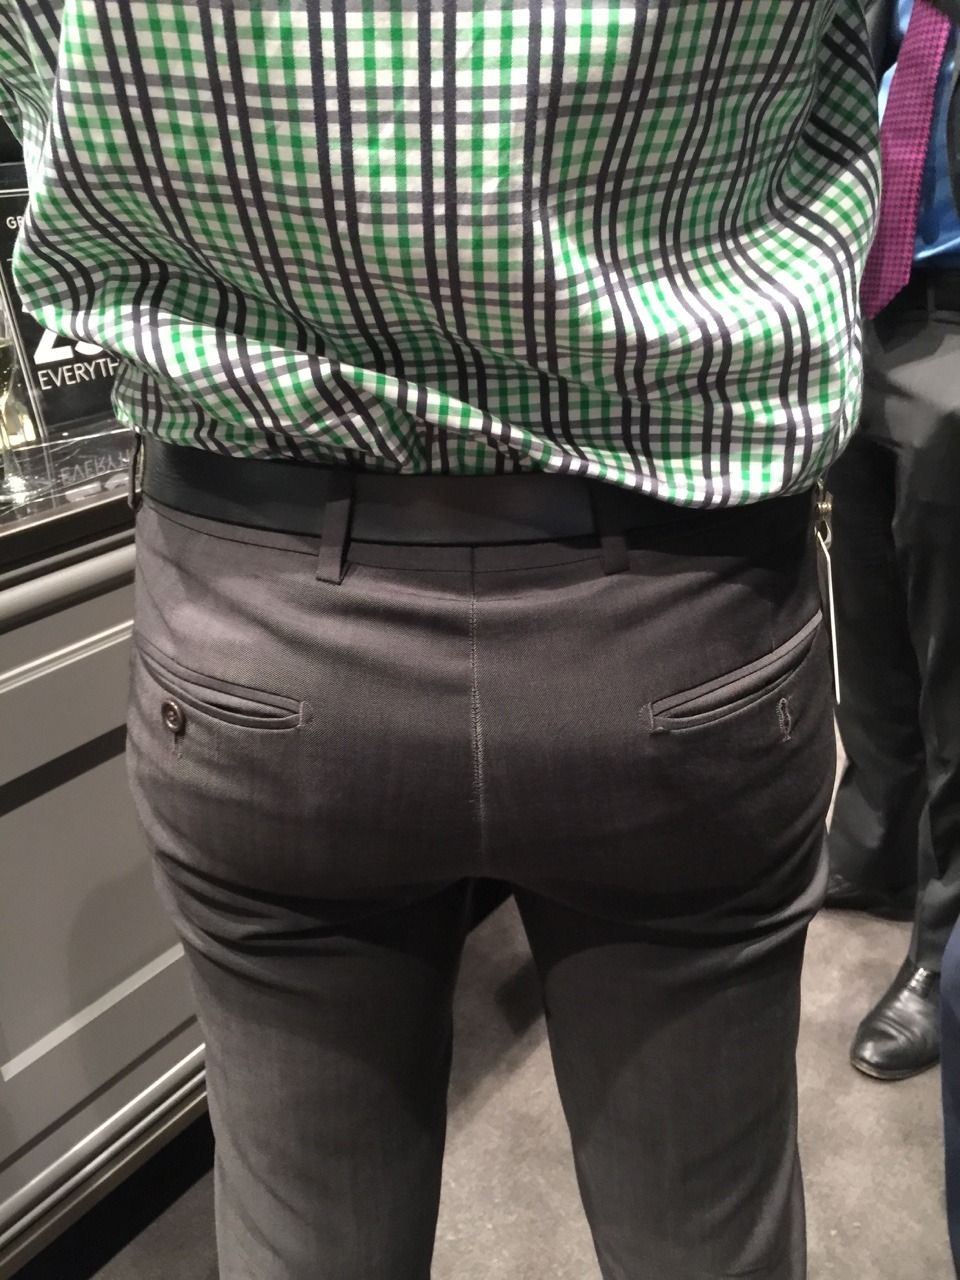 Shiny tight pants